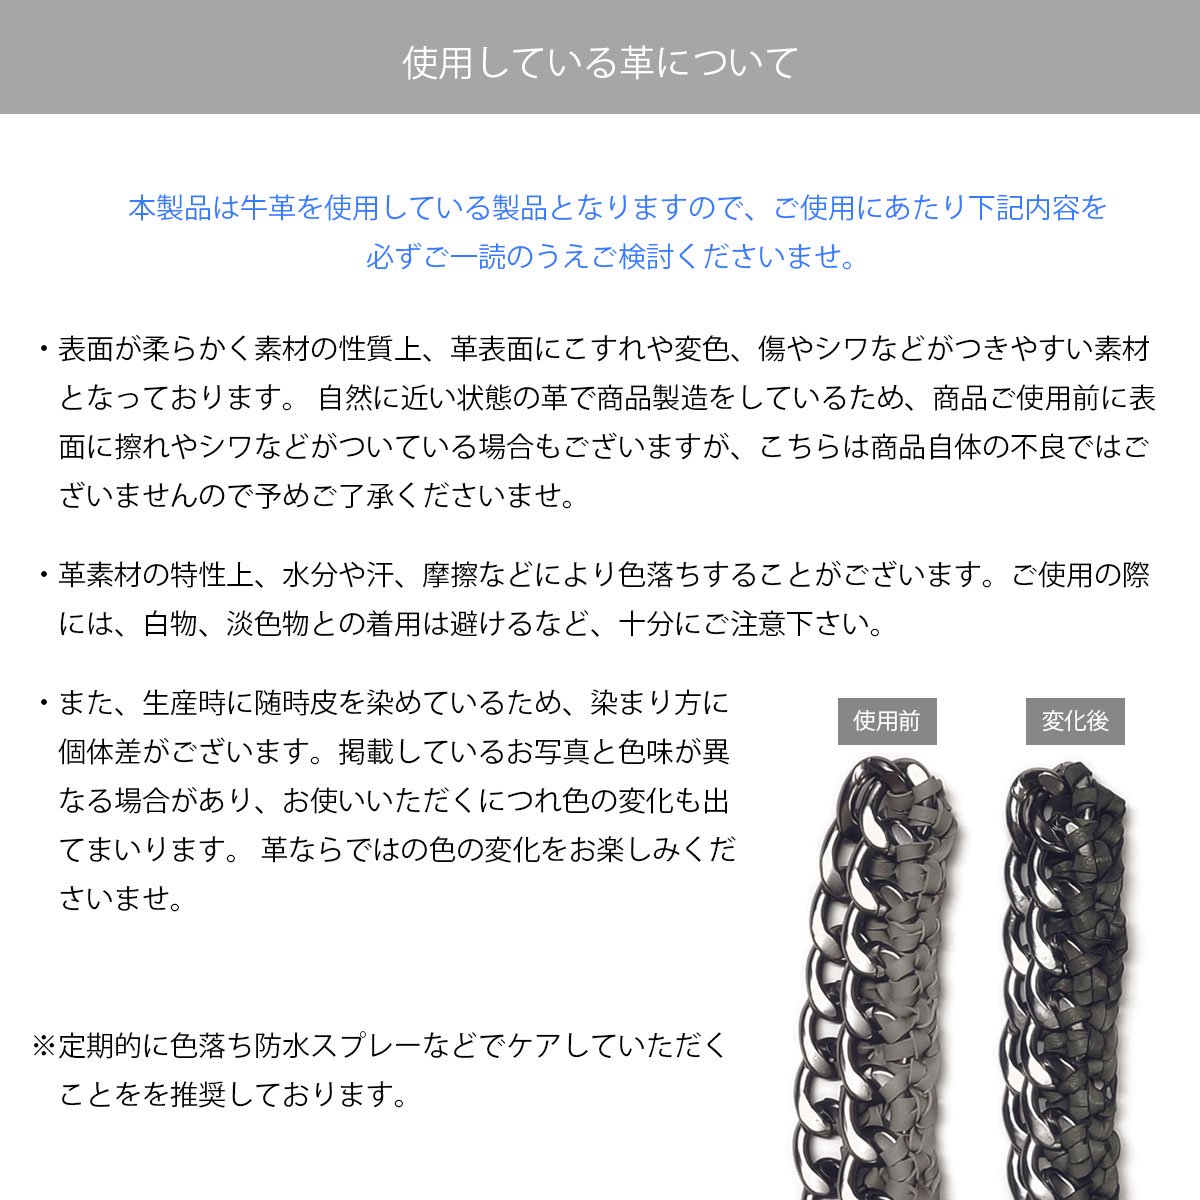 【紐のみ】 Tie chain shoulder / black (発送はご注文から3営業日以内です) - ajew